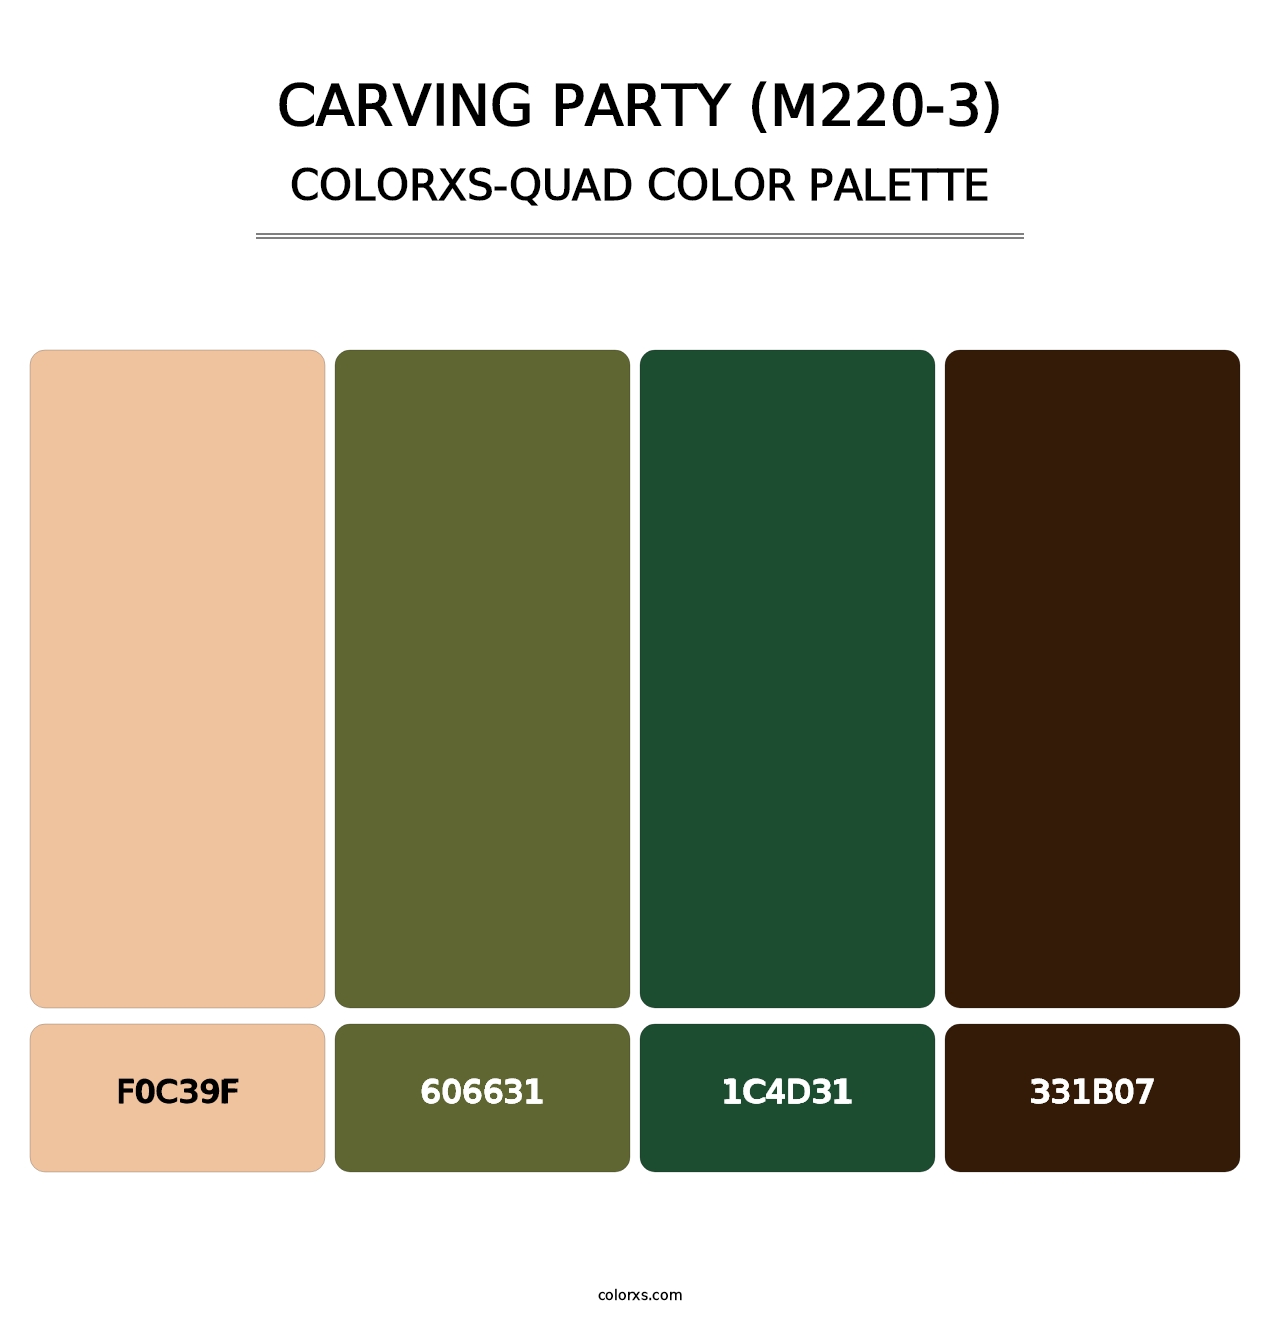 Carving Party (M220-3) - Colorxs Quad Palette